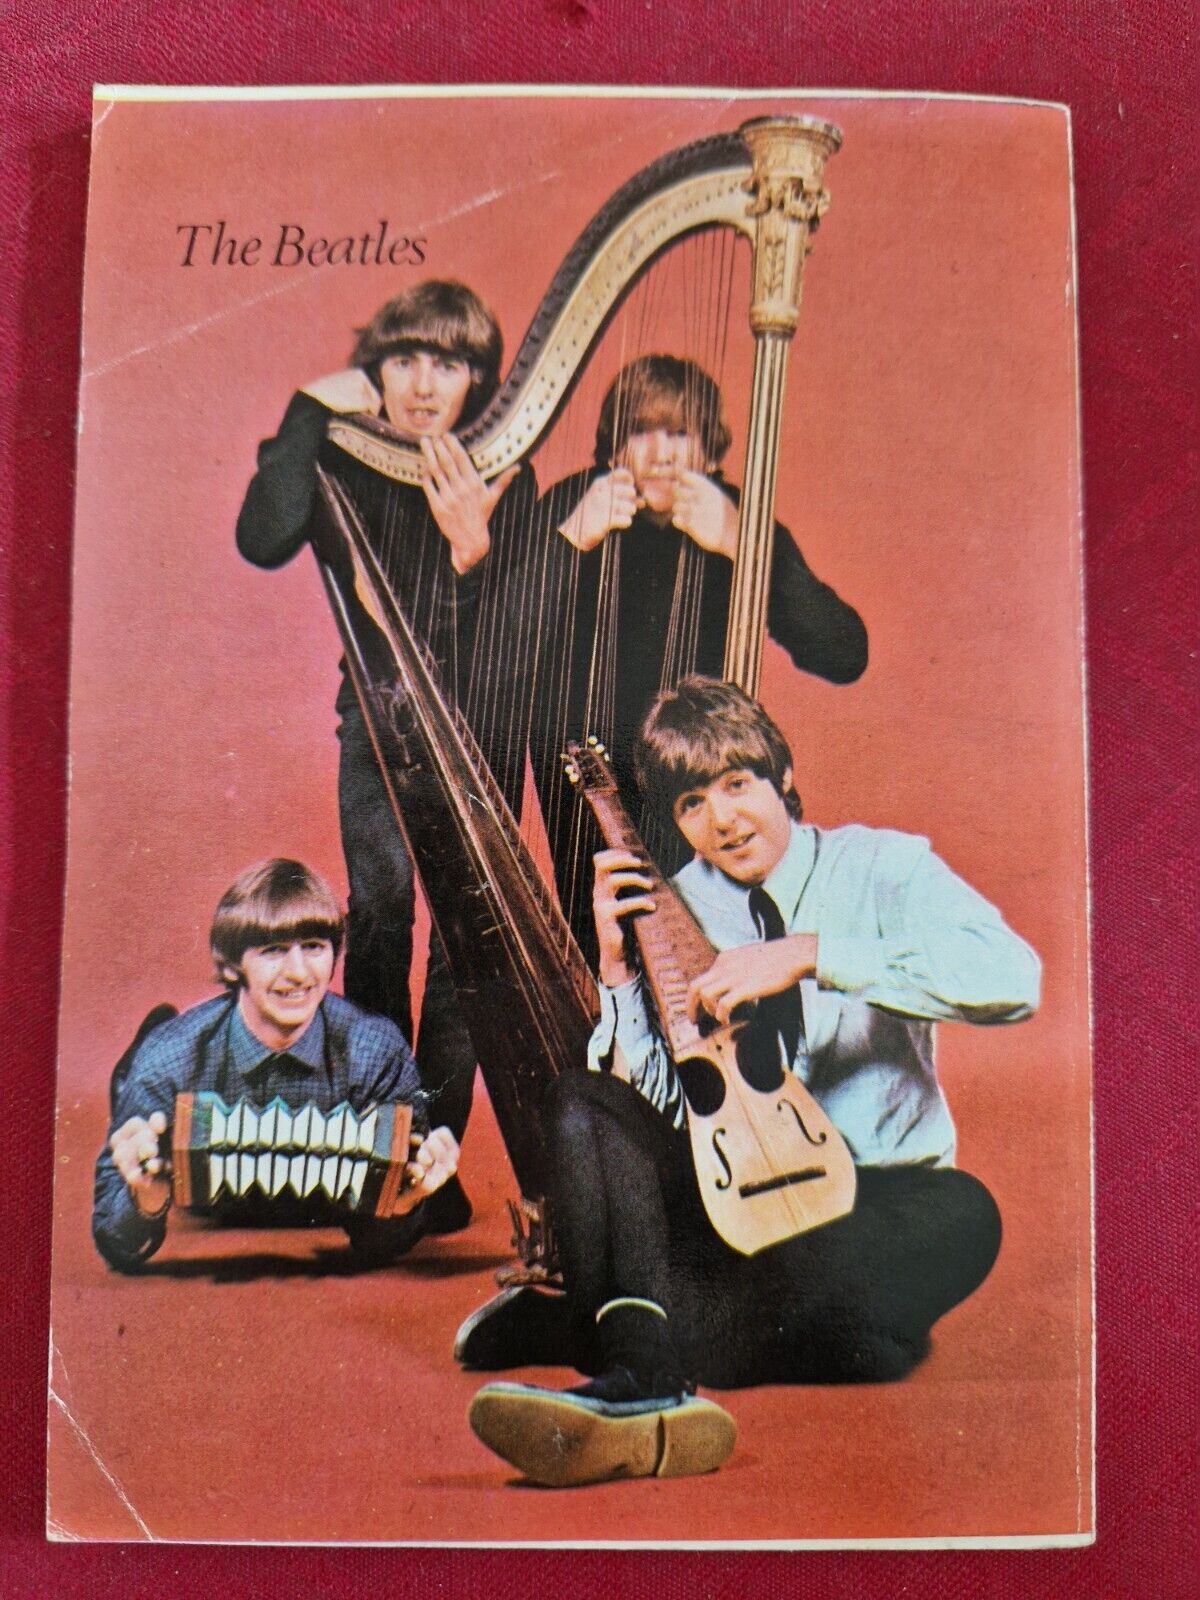 Bajonett serien #17 1968 with Beatles on the back cover. Nice Norwegian edition.